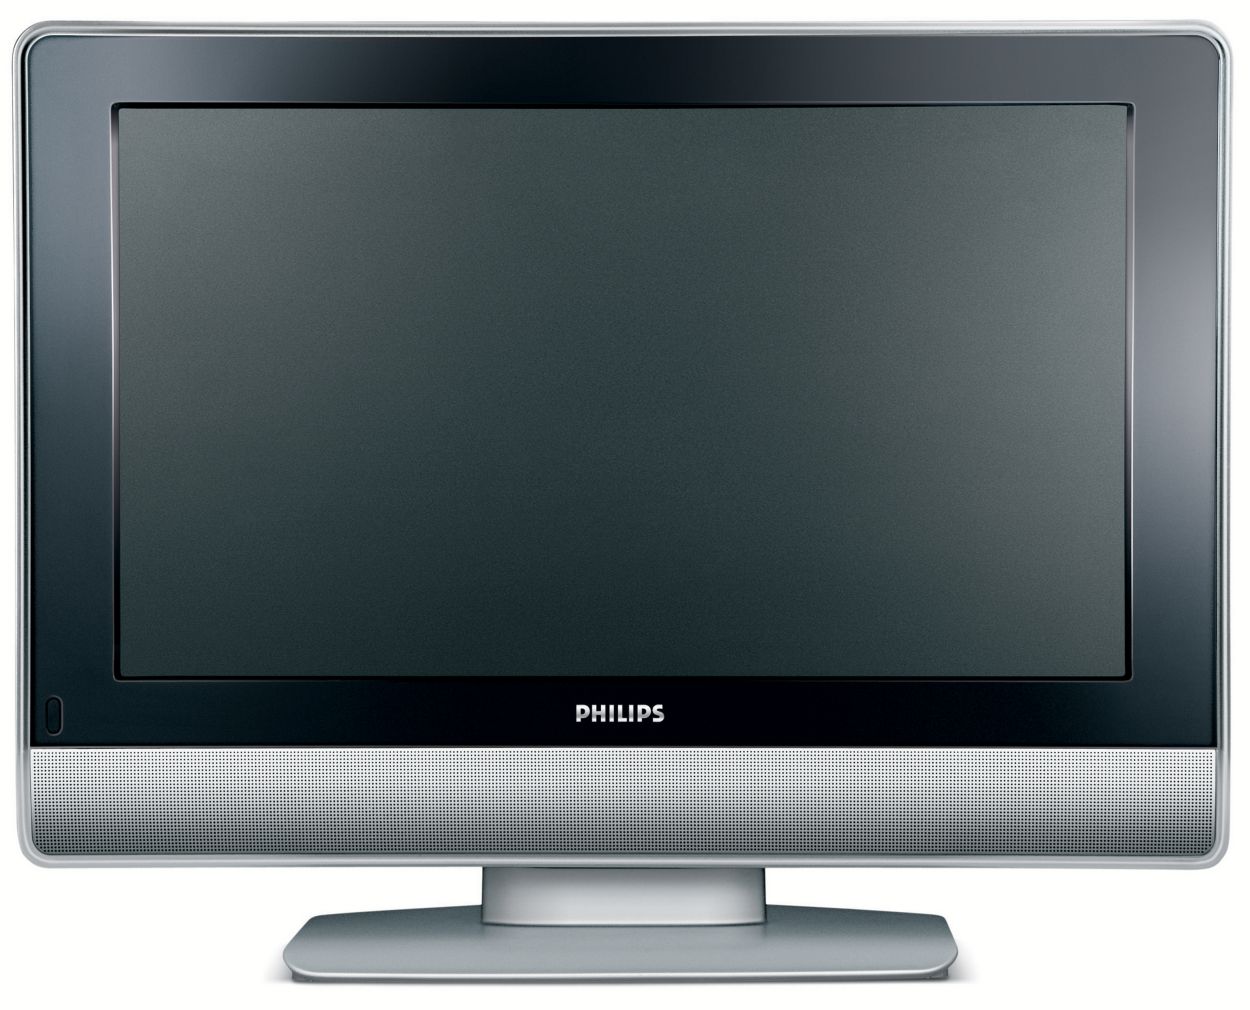 Телевизоры philips спб. Philips 26pf7321. Телевизор Philips 26pf7521d. Телевизор Philips 50pf7321. Телевизор 26 дюйма Филипс.